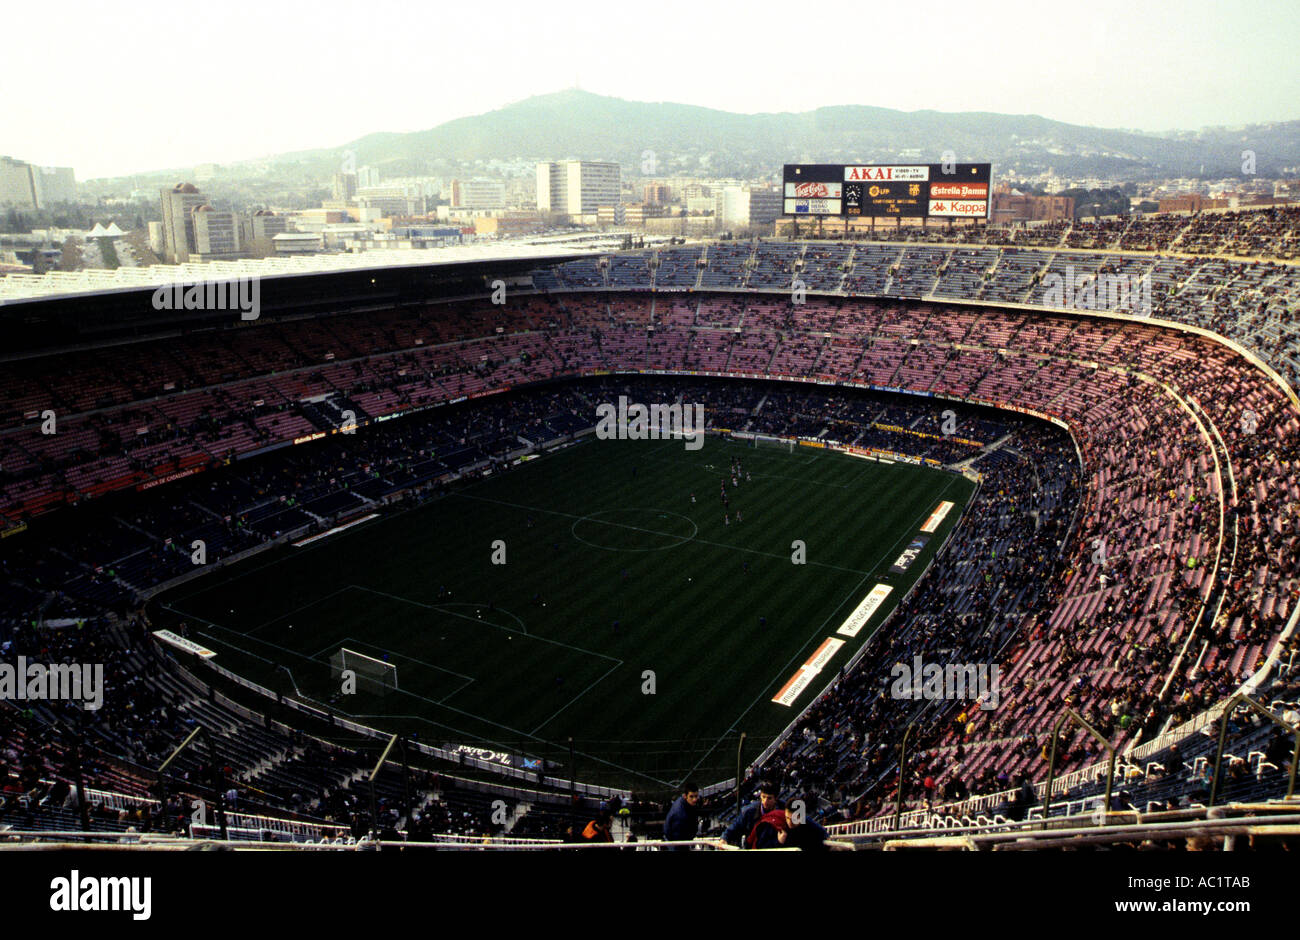 Nou Camp-Stadion, das größte Fußballstadion in Europa und Heimat des FC  Barcelona, Spanien Stockfotografie - Alamy